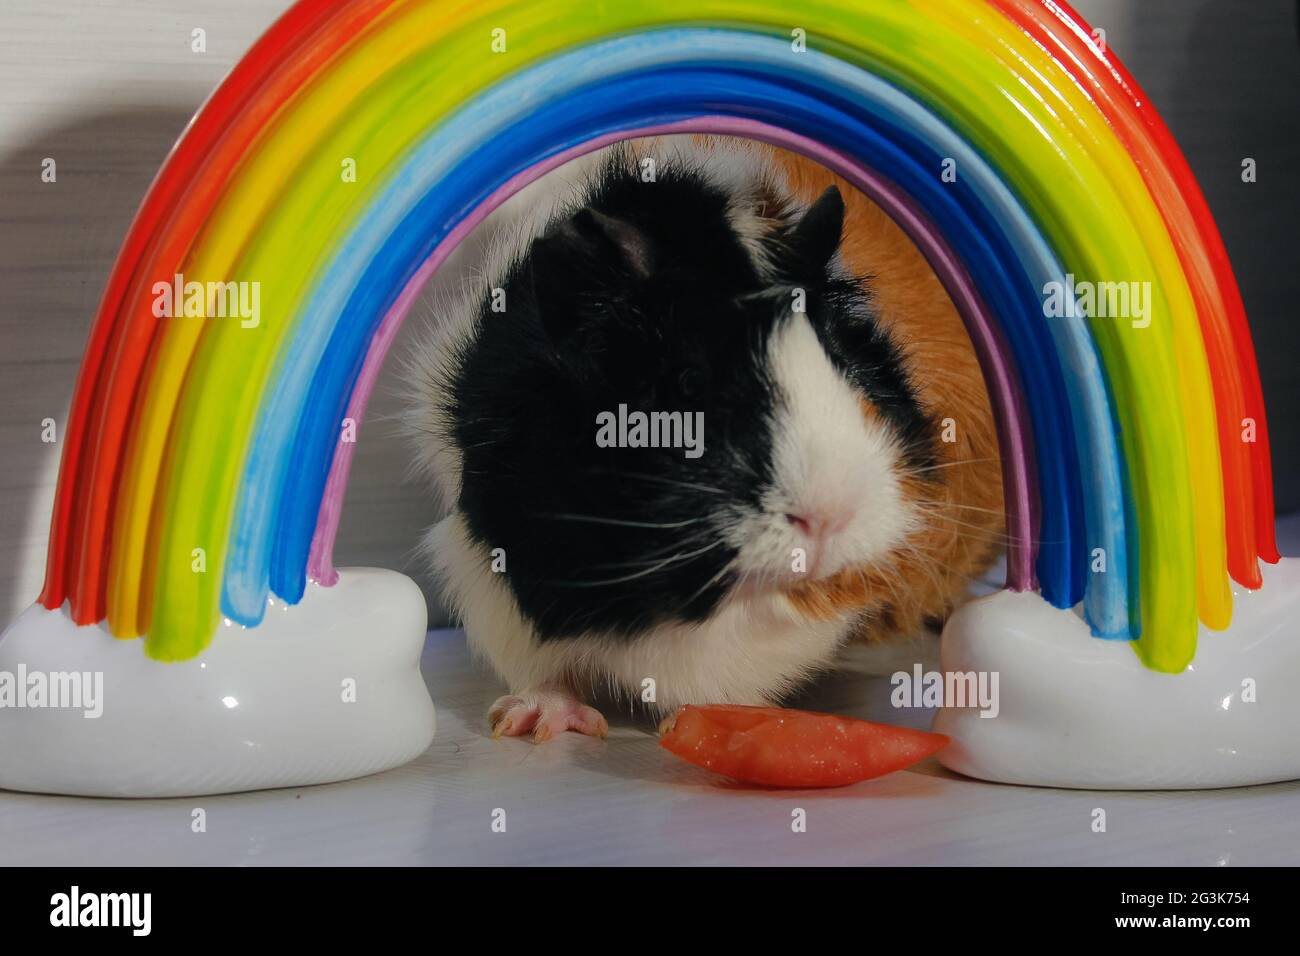 Retrato de cute conejillo masticando una rodaja de tomate, enmarcado por un arcoiris. Foto de stock